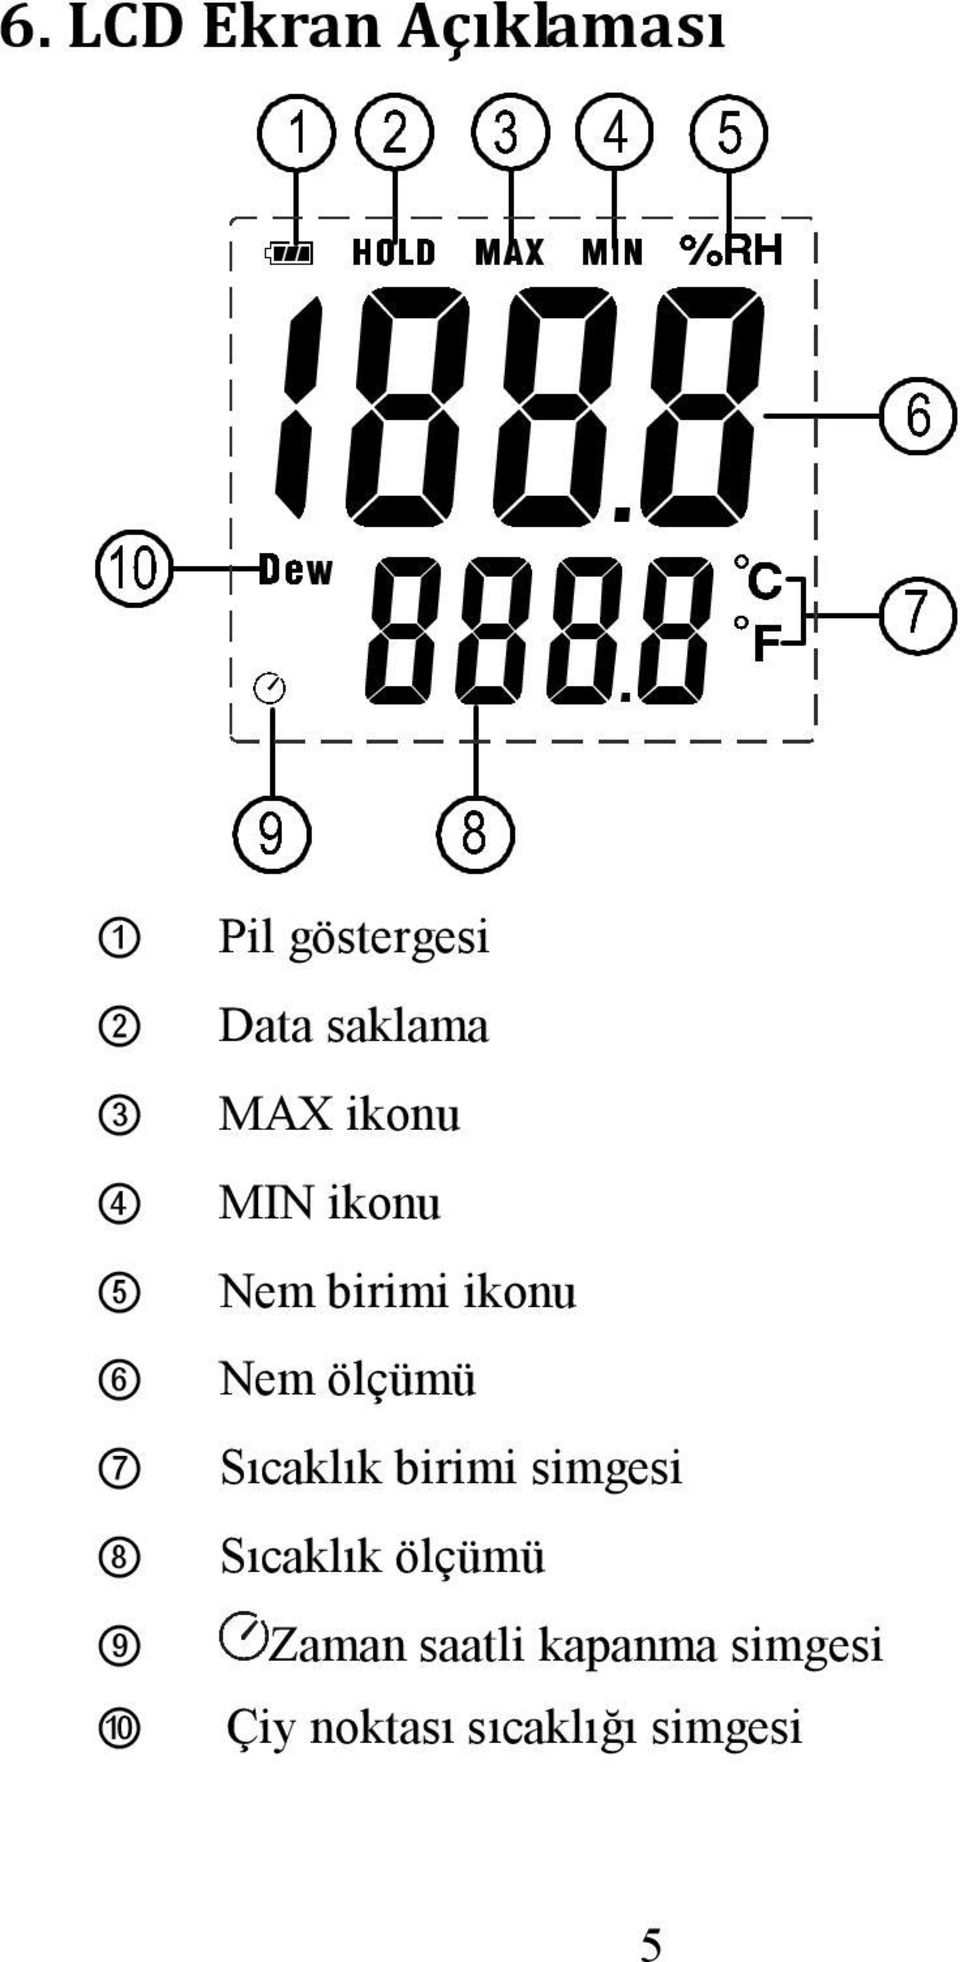 ikonu Nem ölçümü Sıcaklık birimi simgesi Sıcaklık